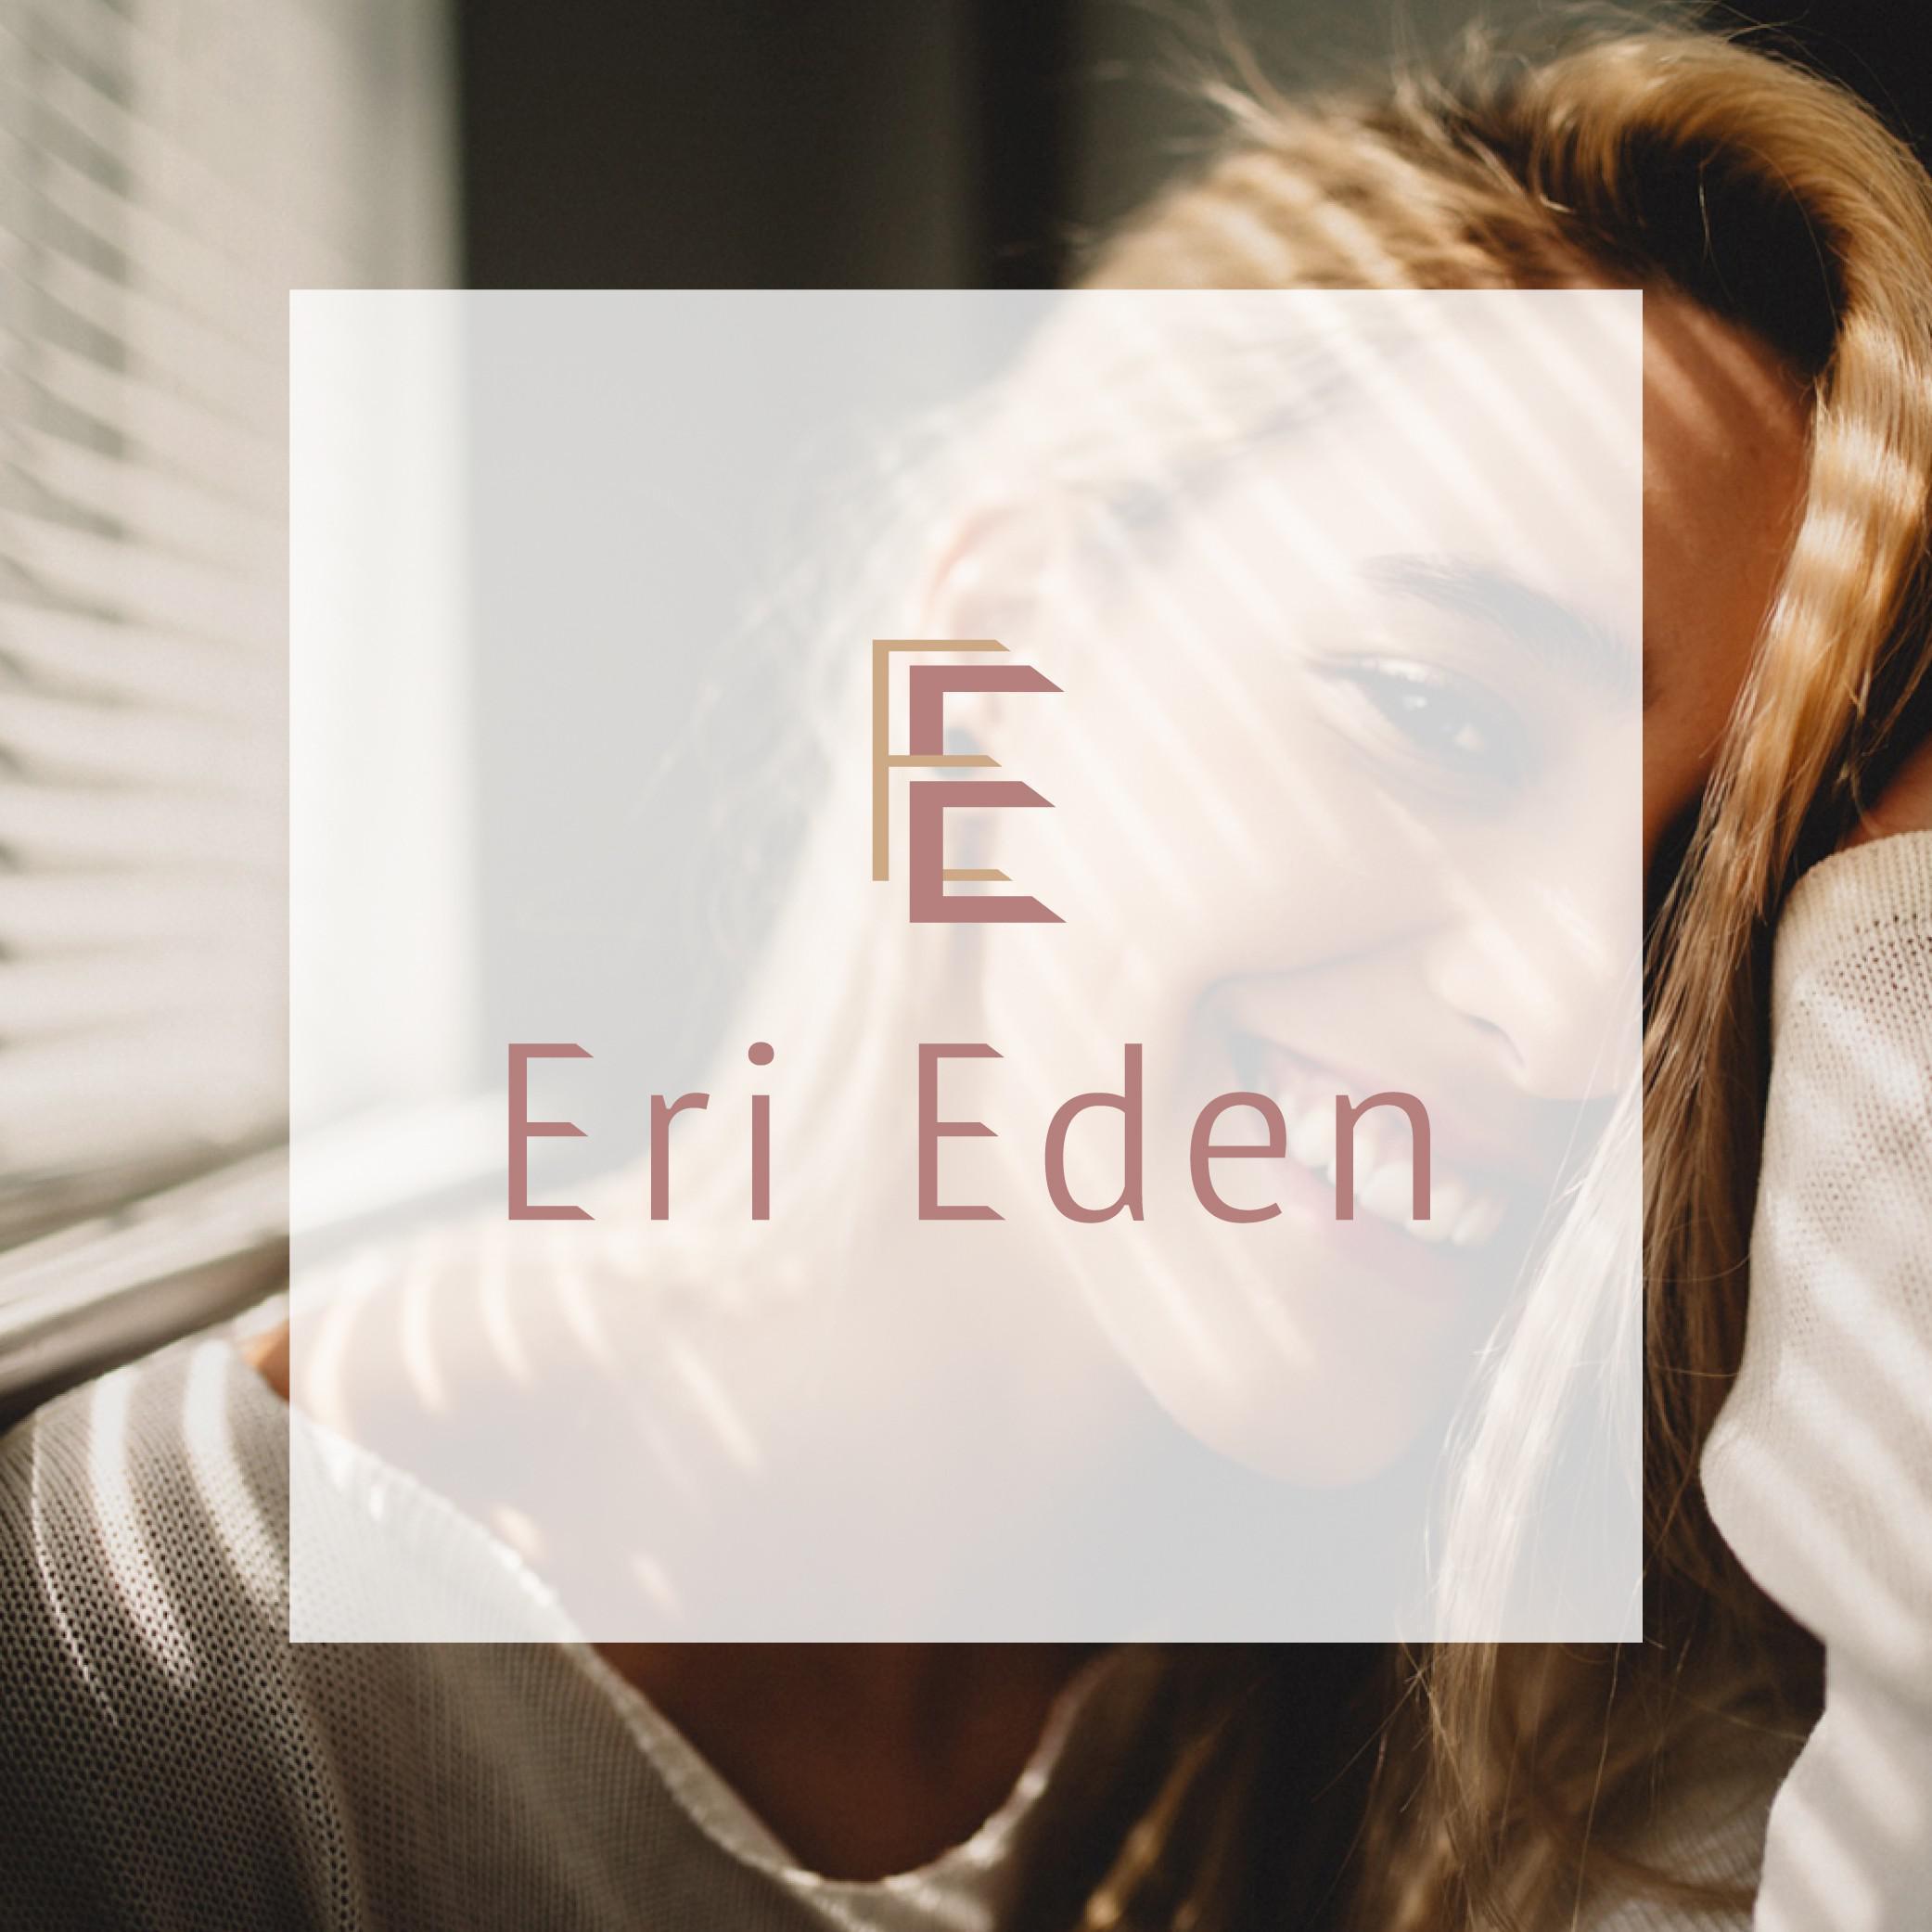 Eri Eden